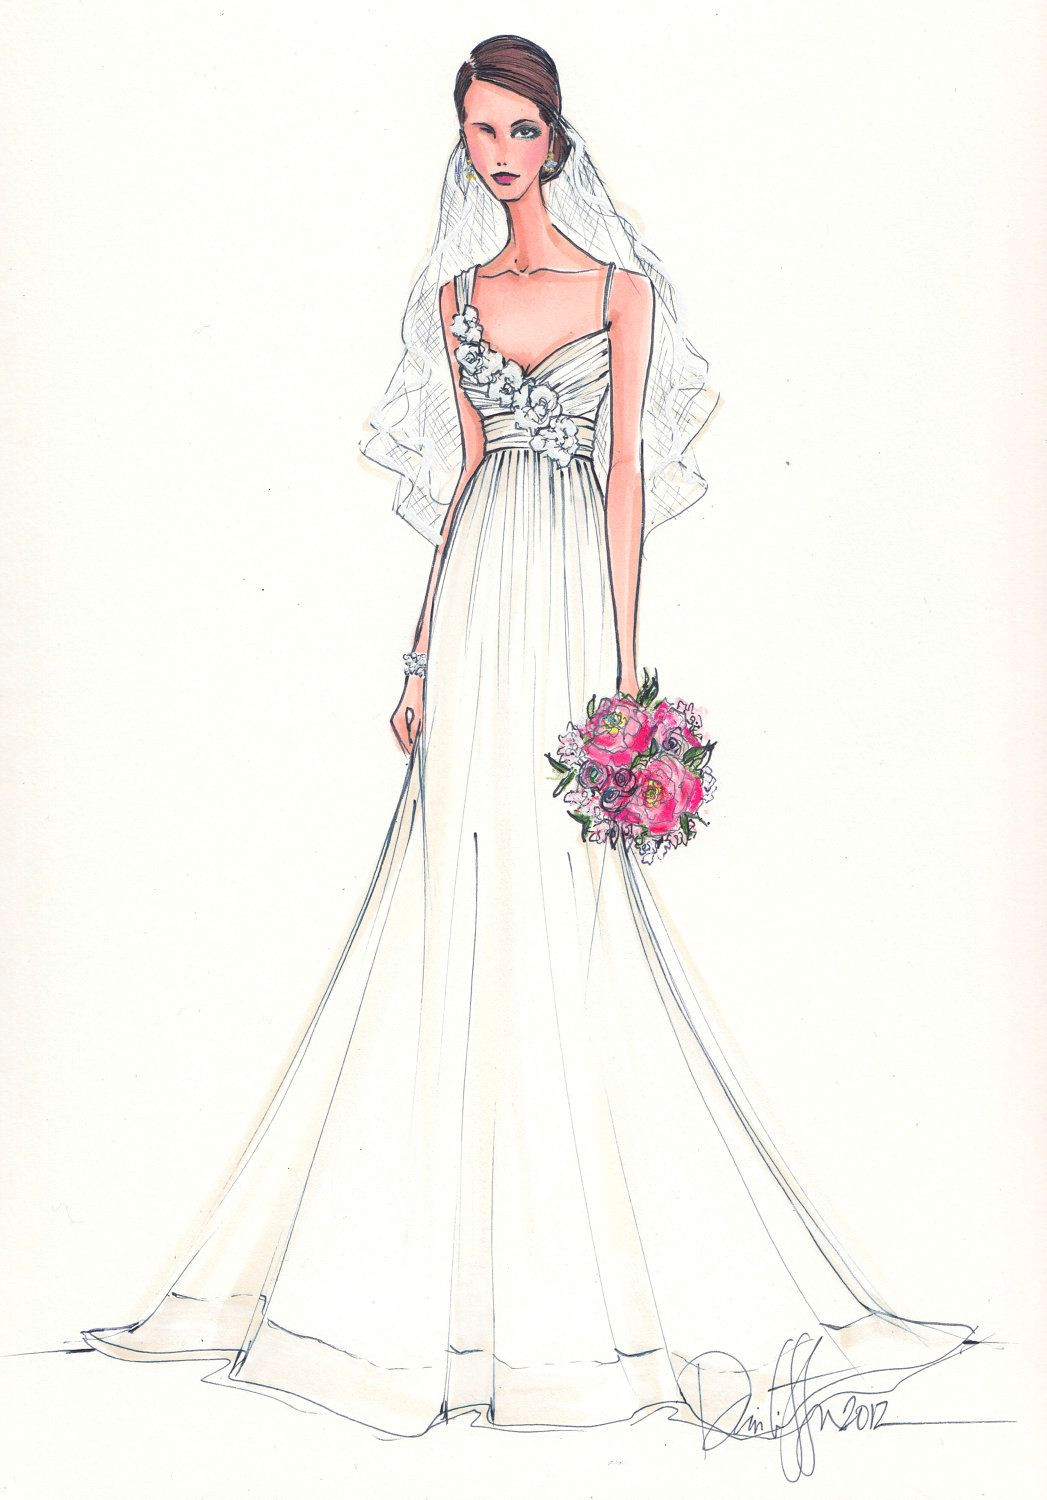 Drawing Of Girl In Wedding Dress Custom Bridal Illustration 165 00 Via Etsy Art Illustration